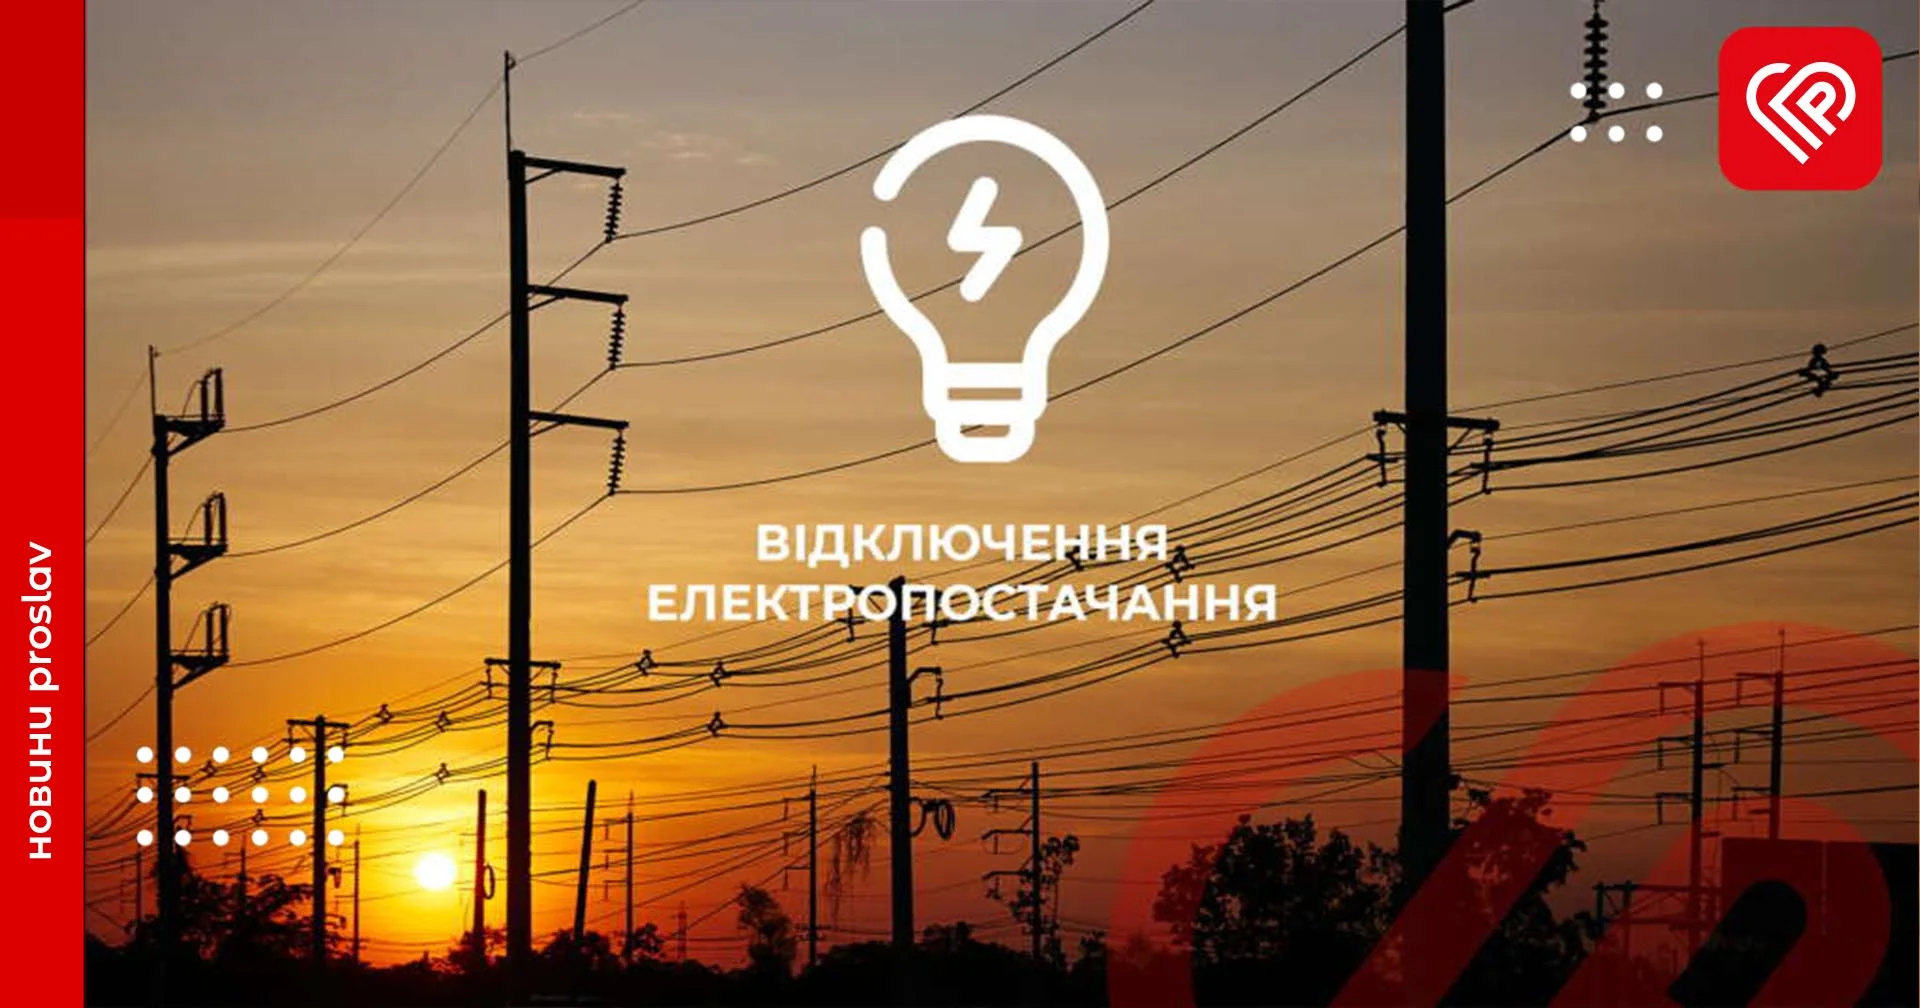 27 лютого на Переяславщині будуть відбуватись планові відключення електроенергії